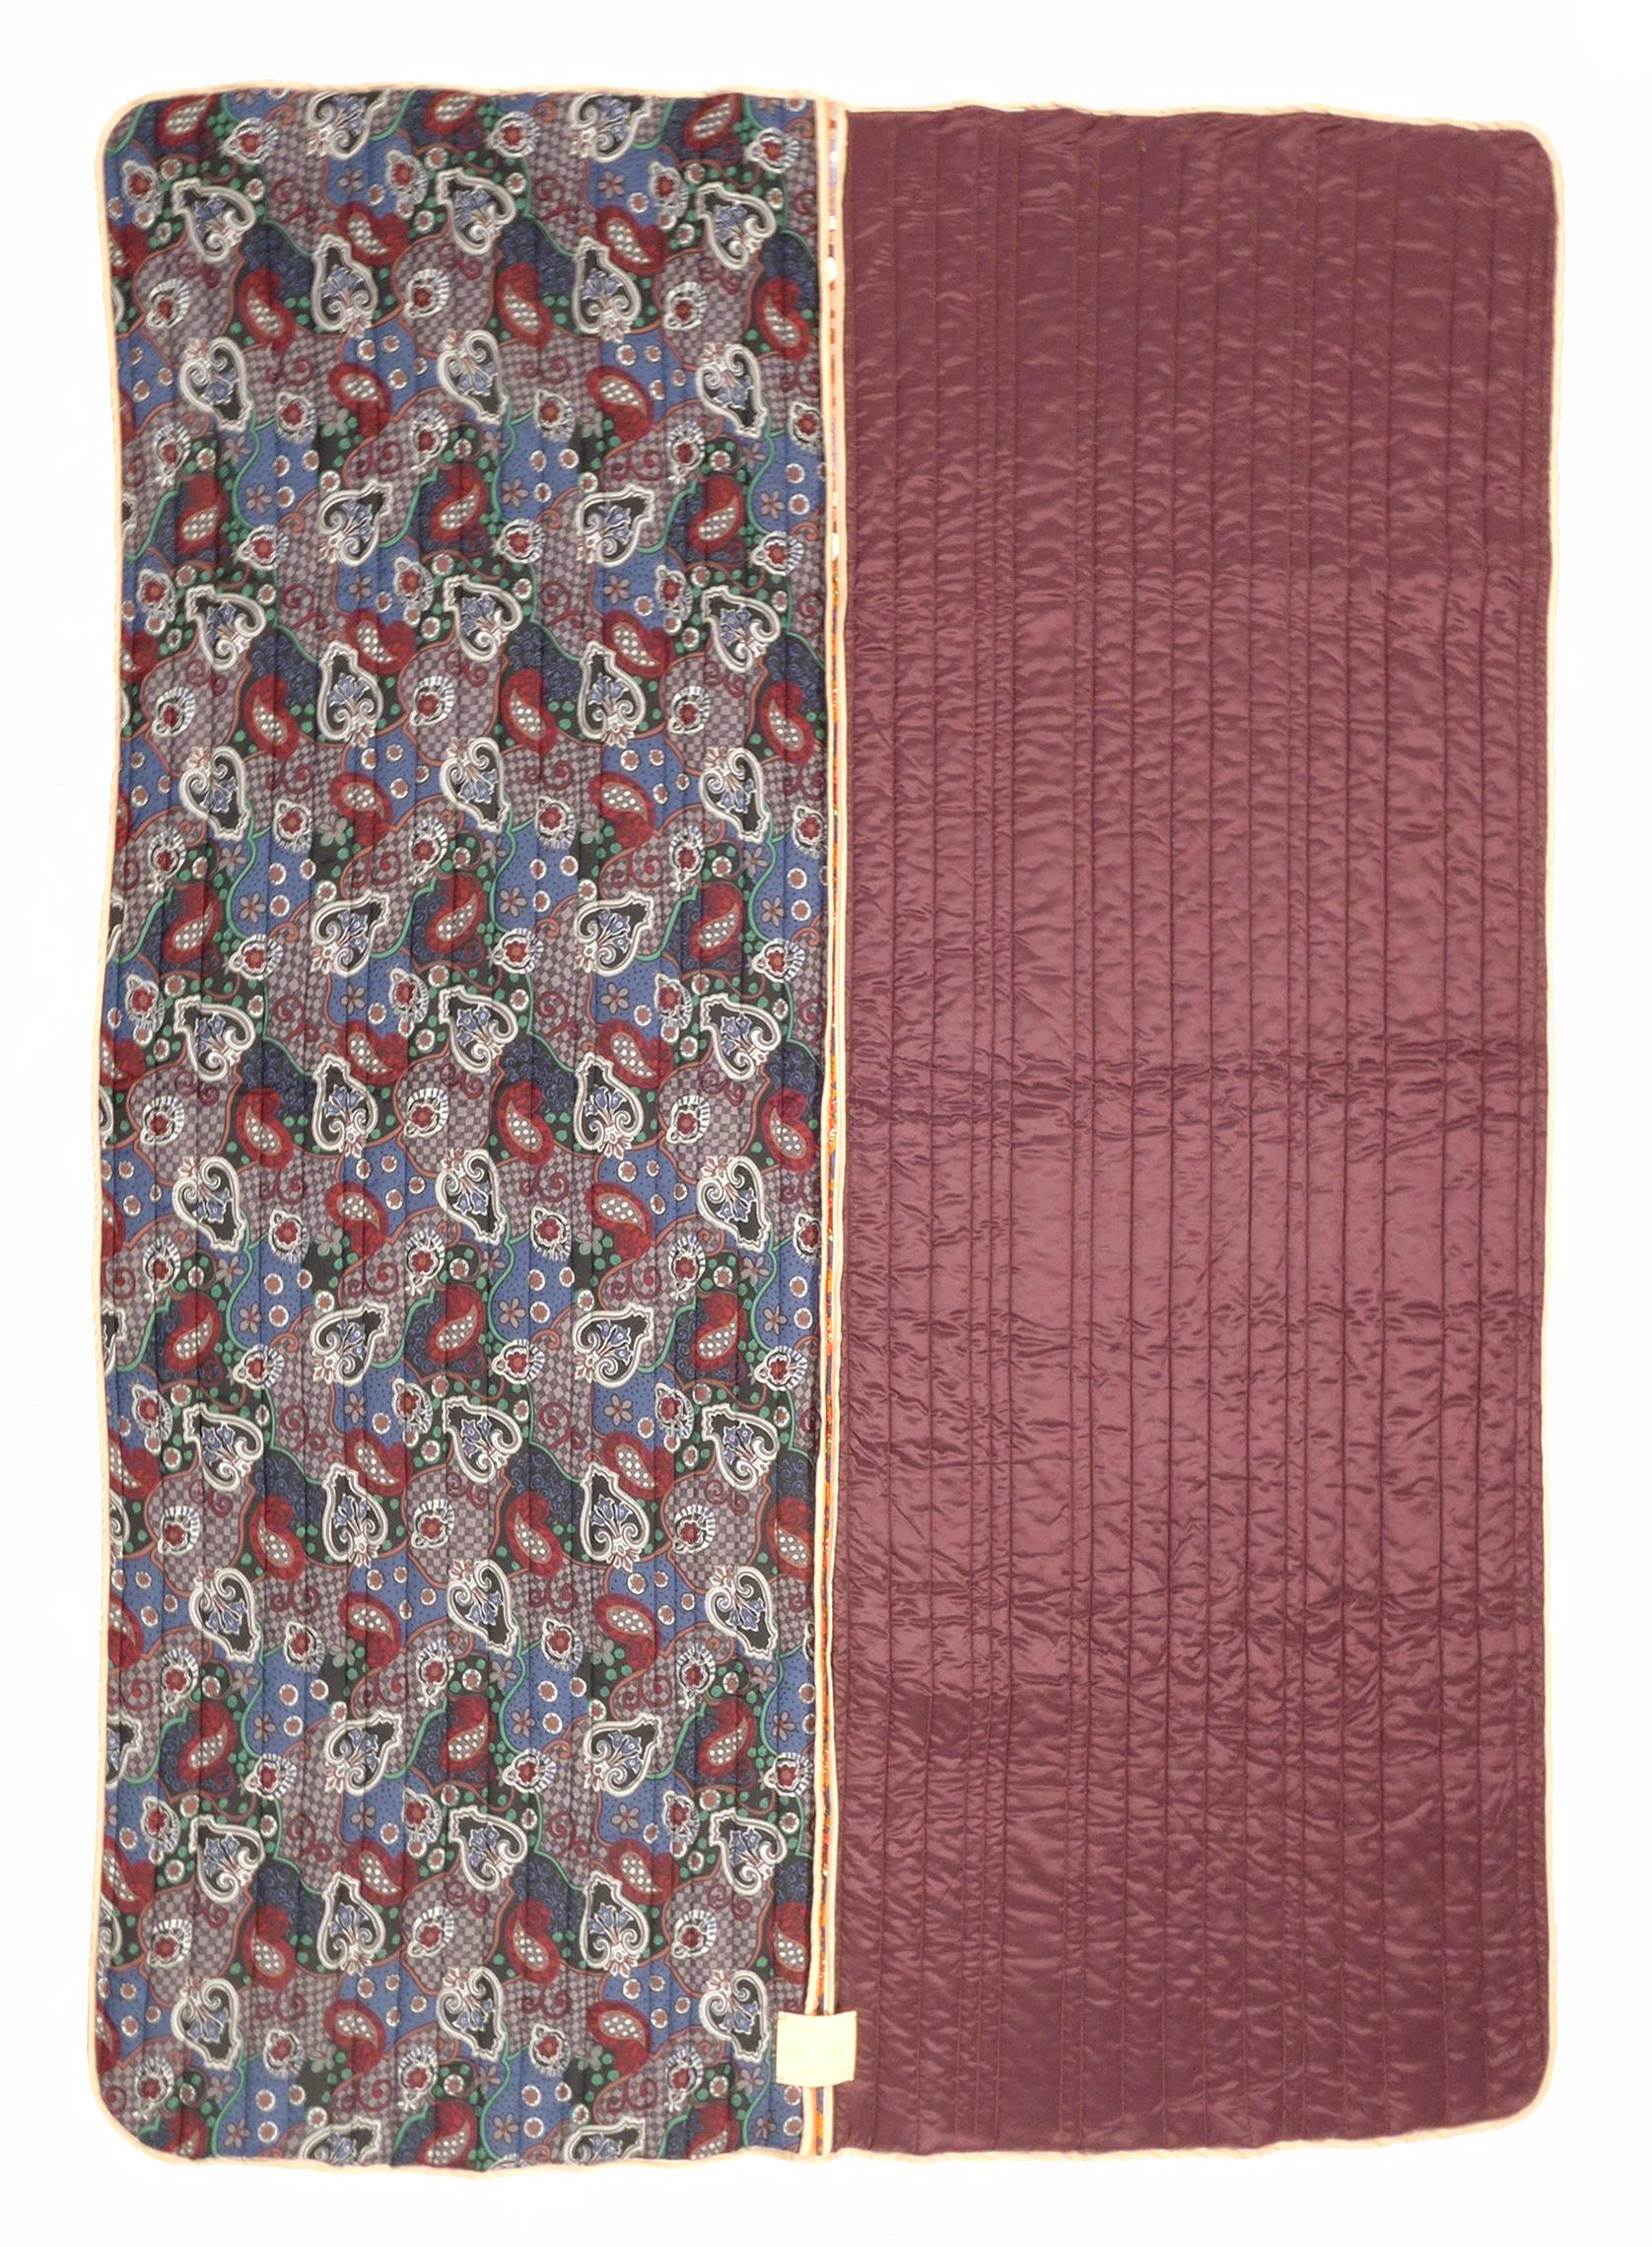 Piet Hein Eek Vintage Italian Silk Quilt Blanket In Excellent Condition For Sale In Amsterdam, NL